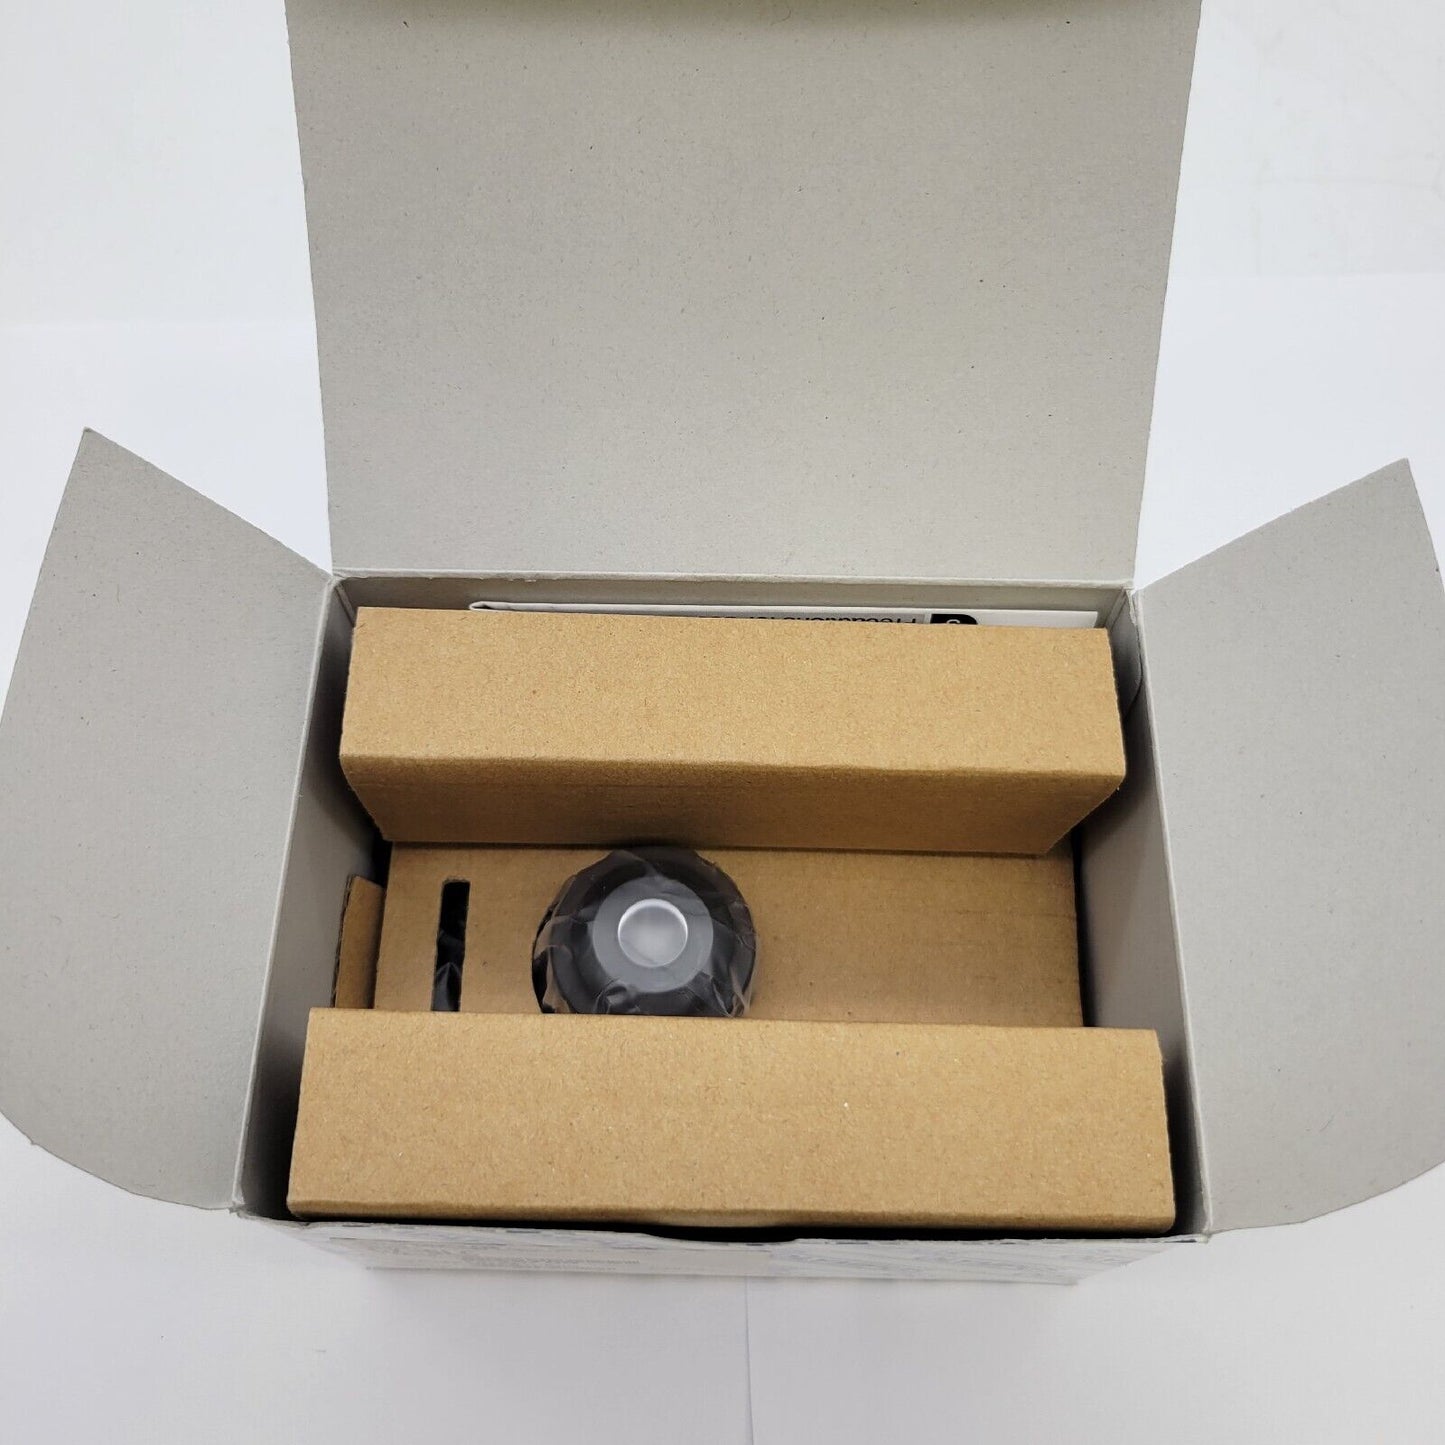 Olympus Microscope Slider Condenser CX-SLC for CX 2 - microscopemarketplace